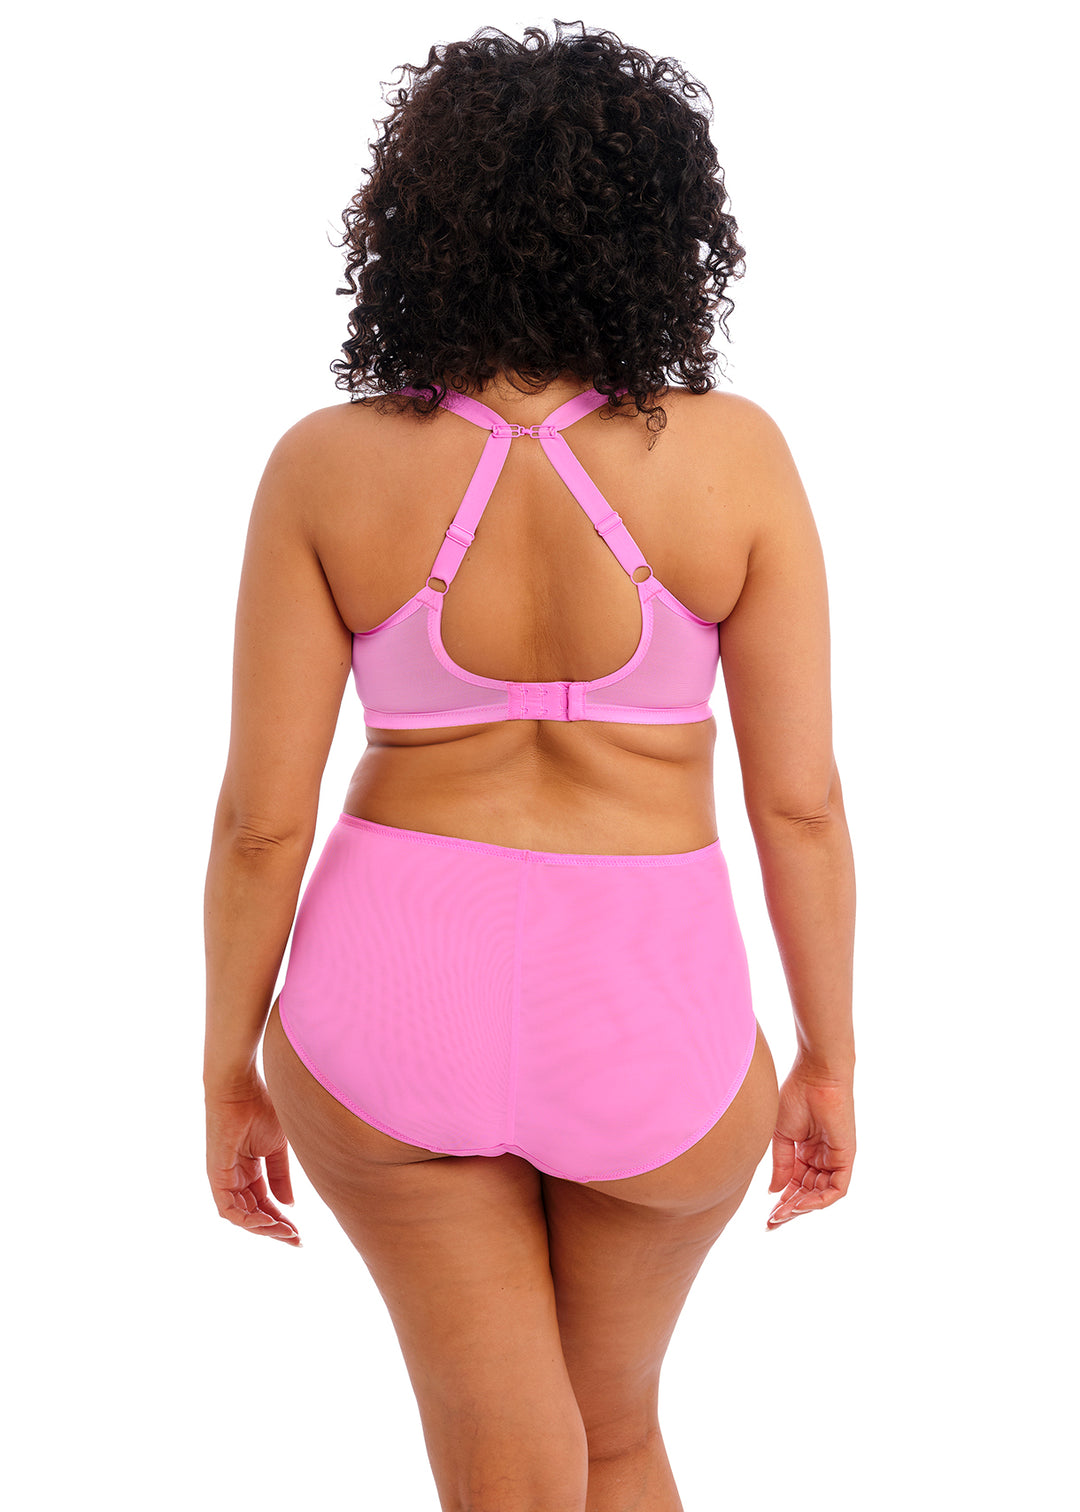 Rockwear Shocking Pink Waikiki Hi Bonded Sports Bra Plus Size 18